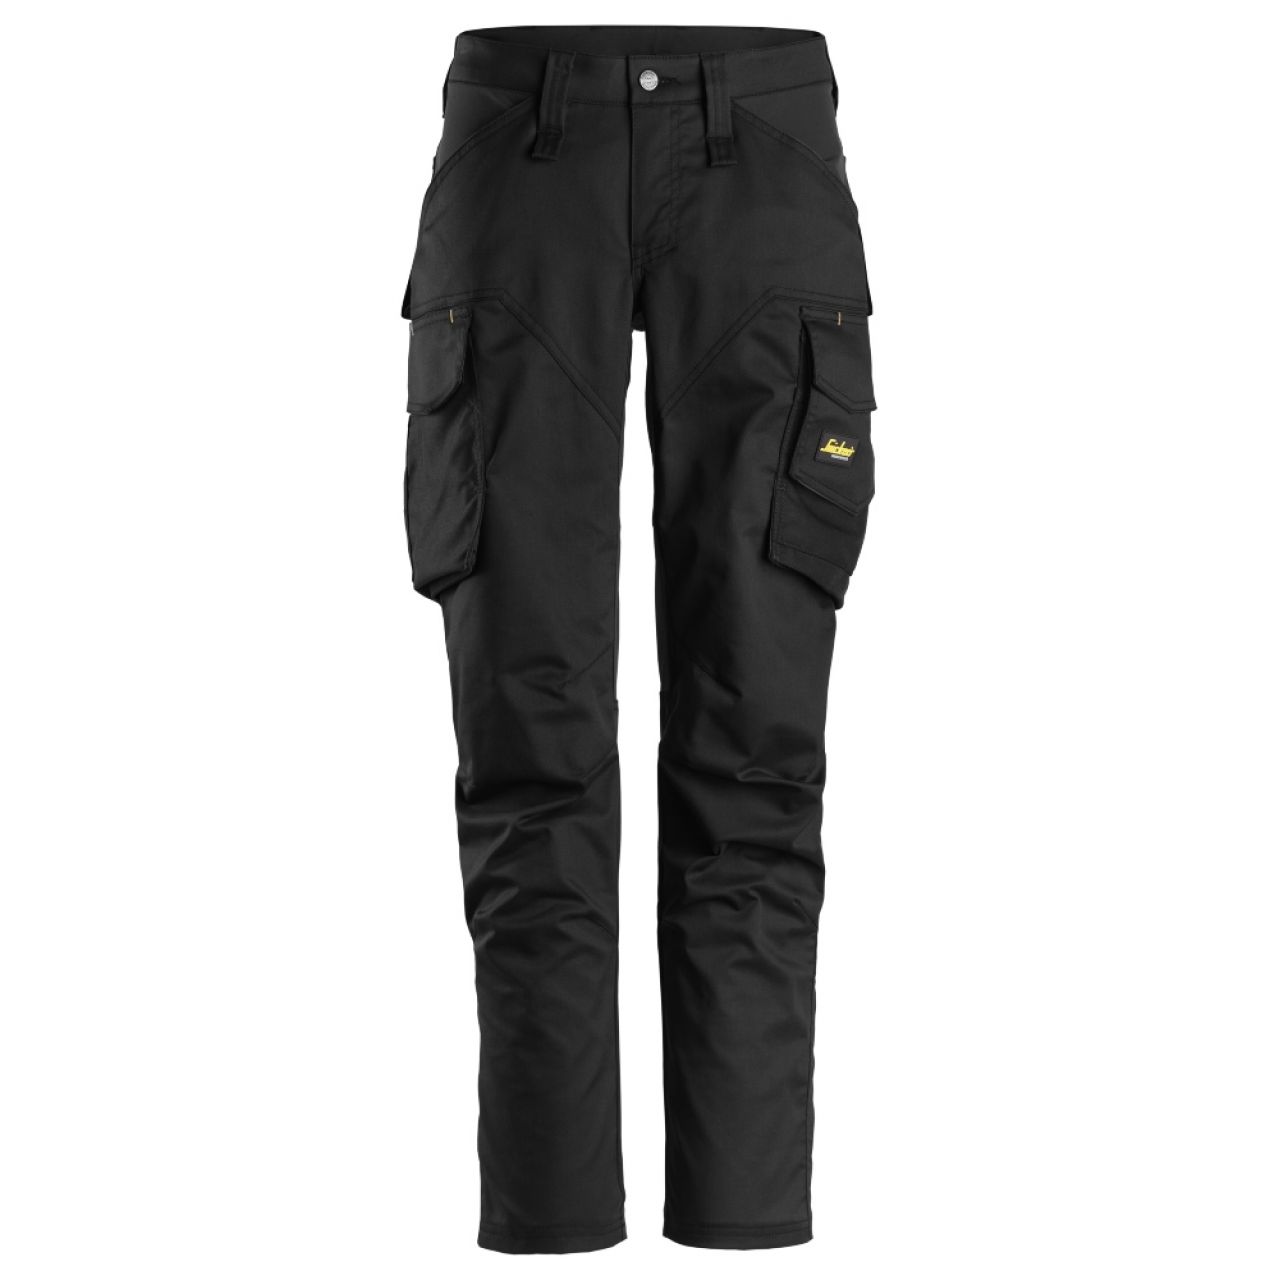 6703 Pantalones largos de trabajo elásticos para mujer con bolsillos para rodilleras AllroundWork negro talla 32